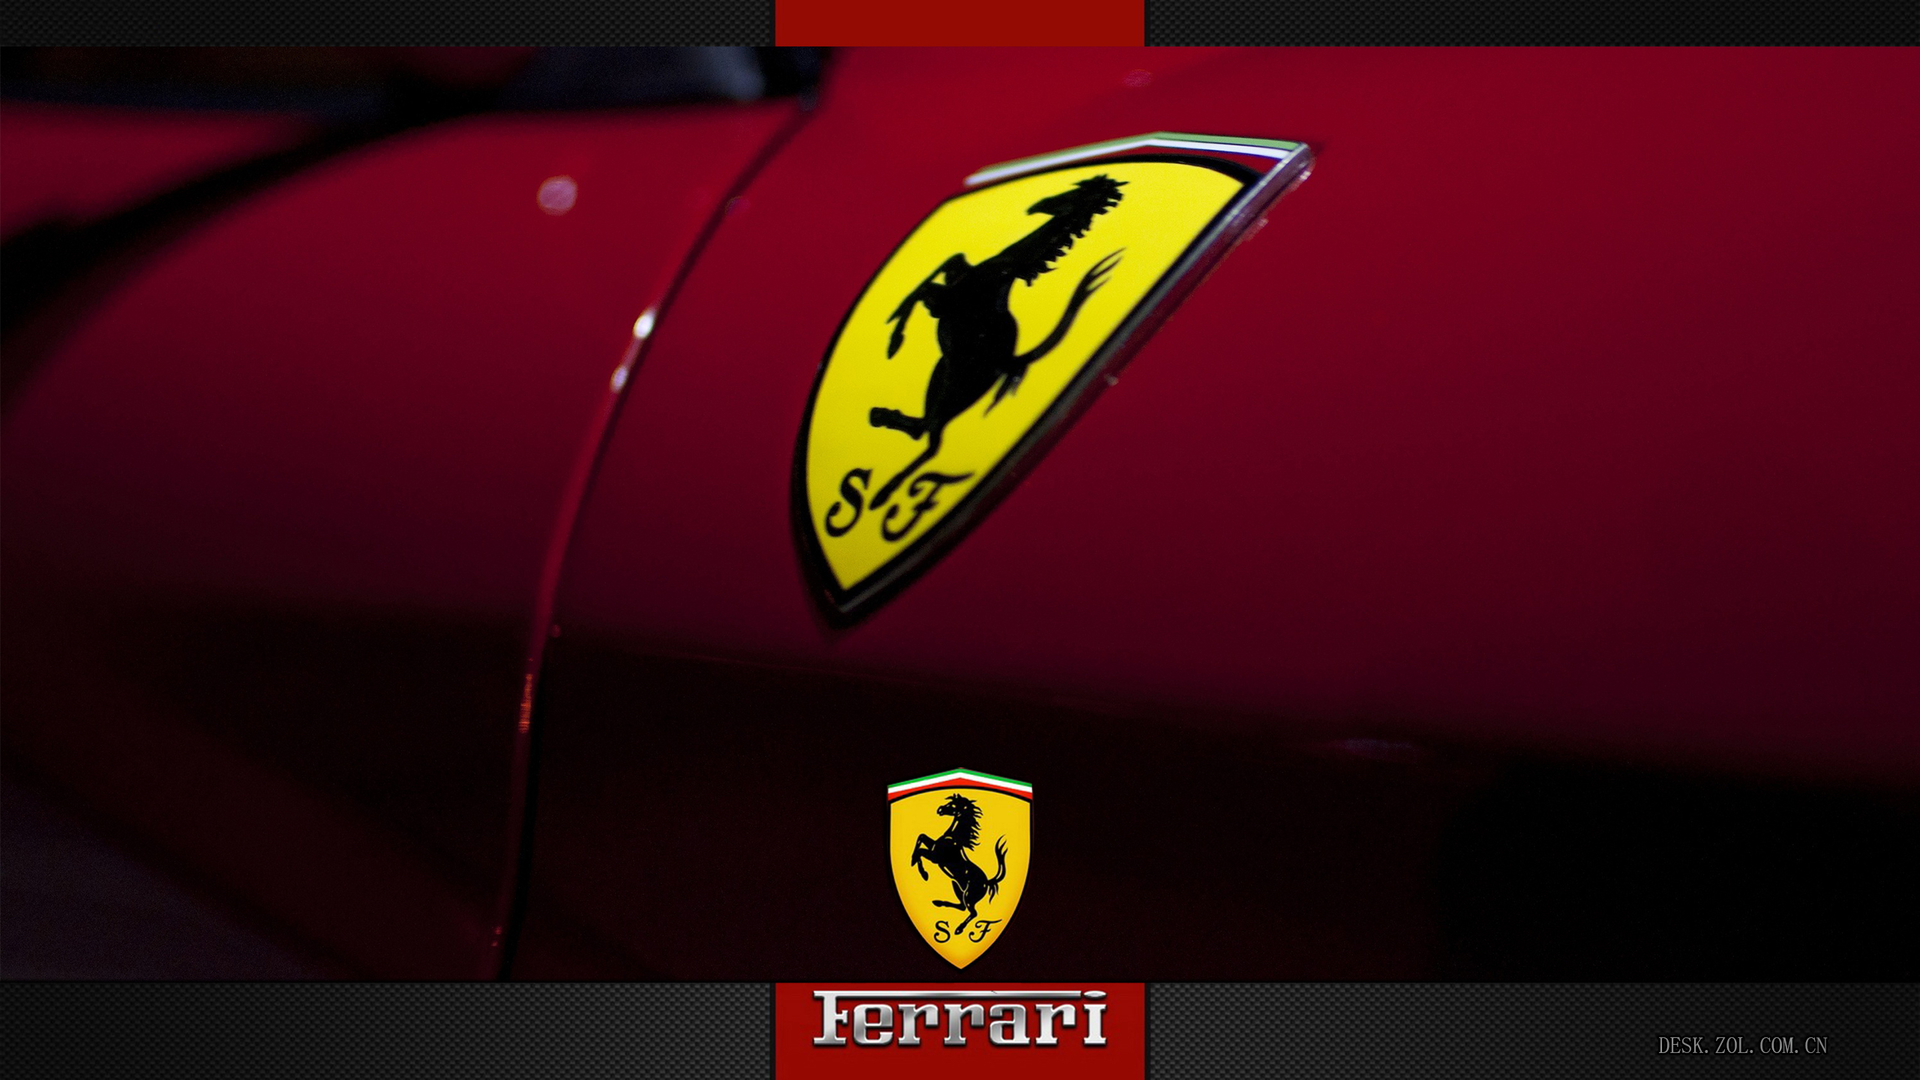 法拉利(Ferrari)高性能跑车酷炫电脑壁纸